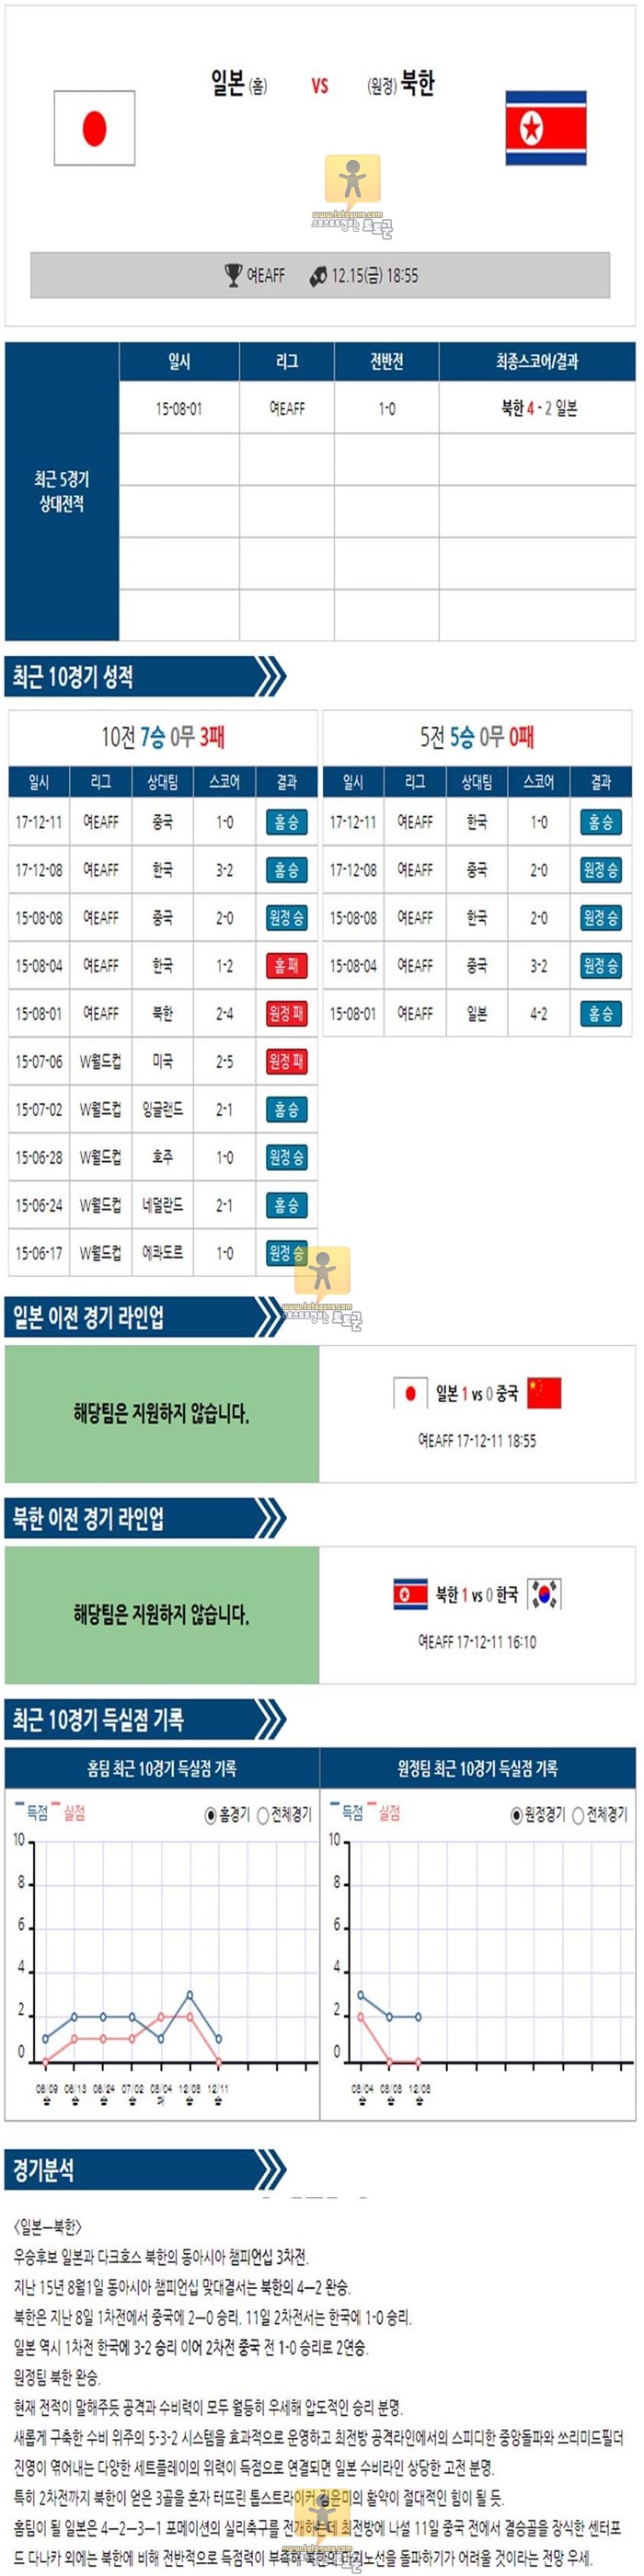 [동아시아시아컵] 12월 15일 여자축구분석 18:55 일본 vs 북한